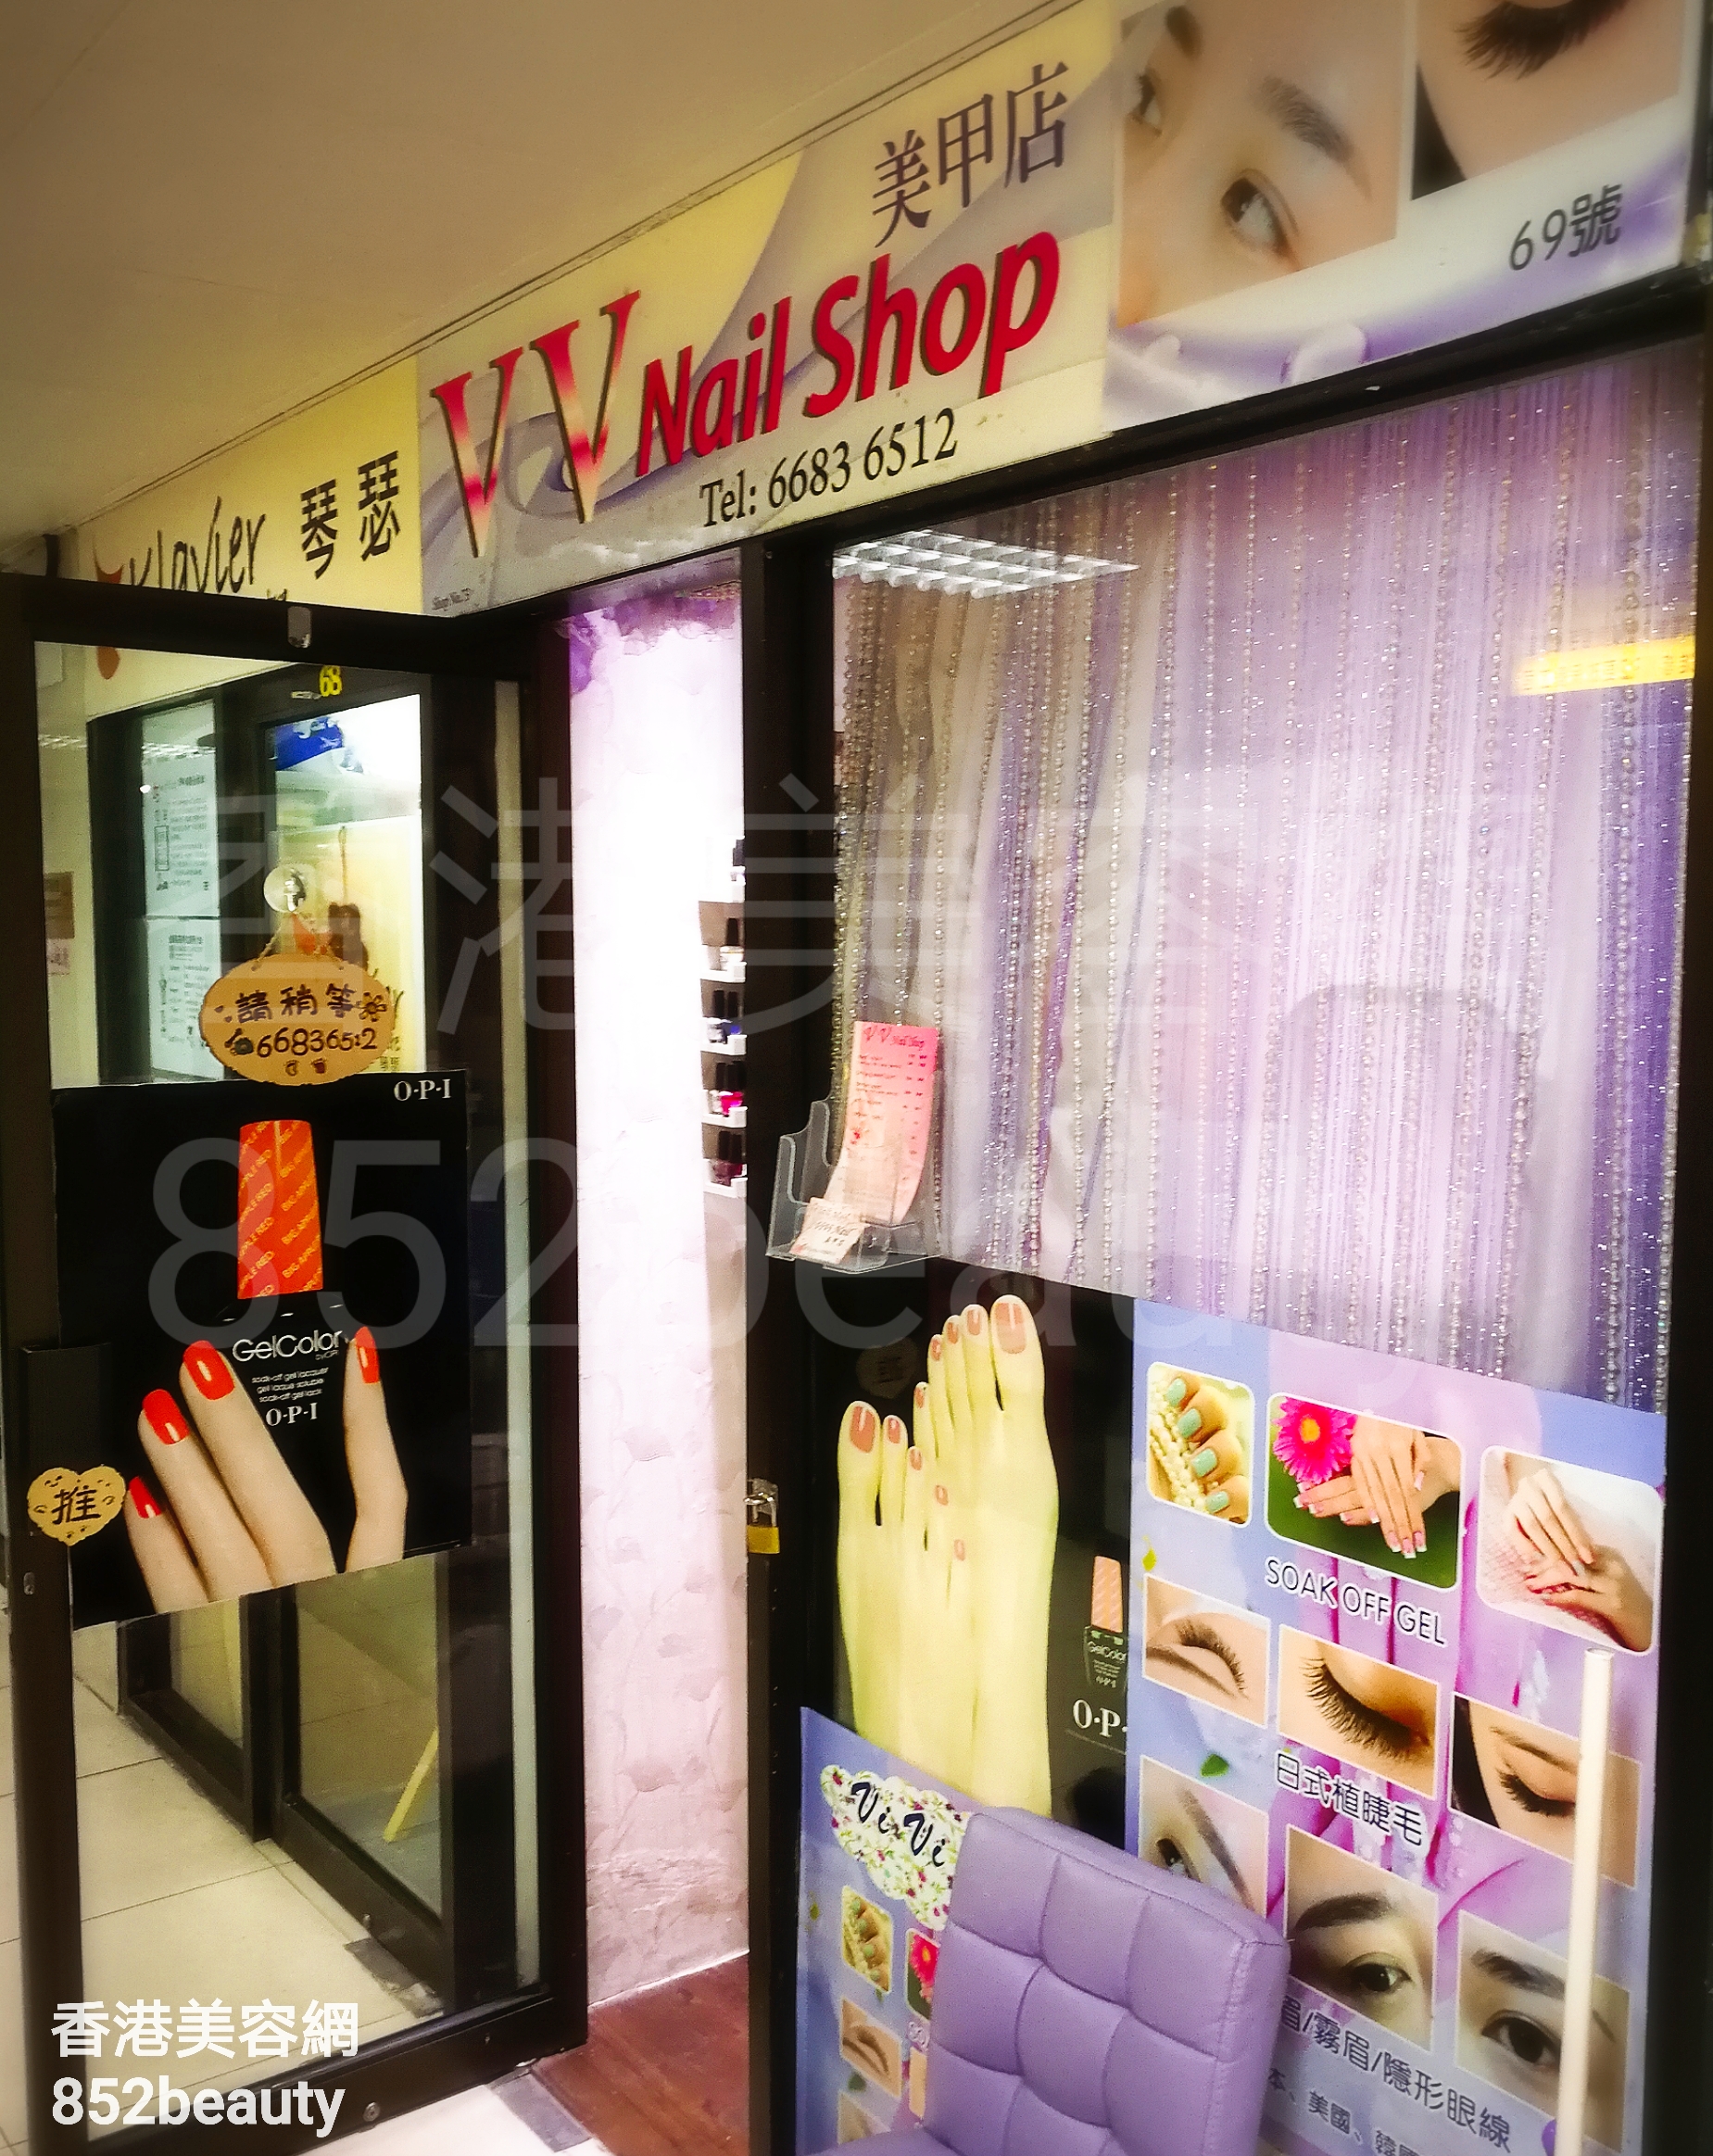 香港美容網 Hong Kong Beauty Salon 美容院 / 美容師: VV Nail Shop